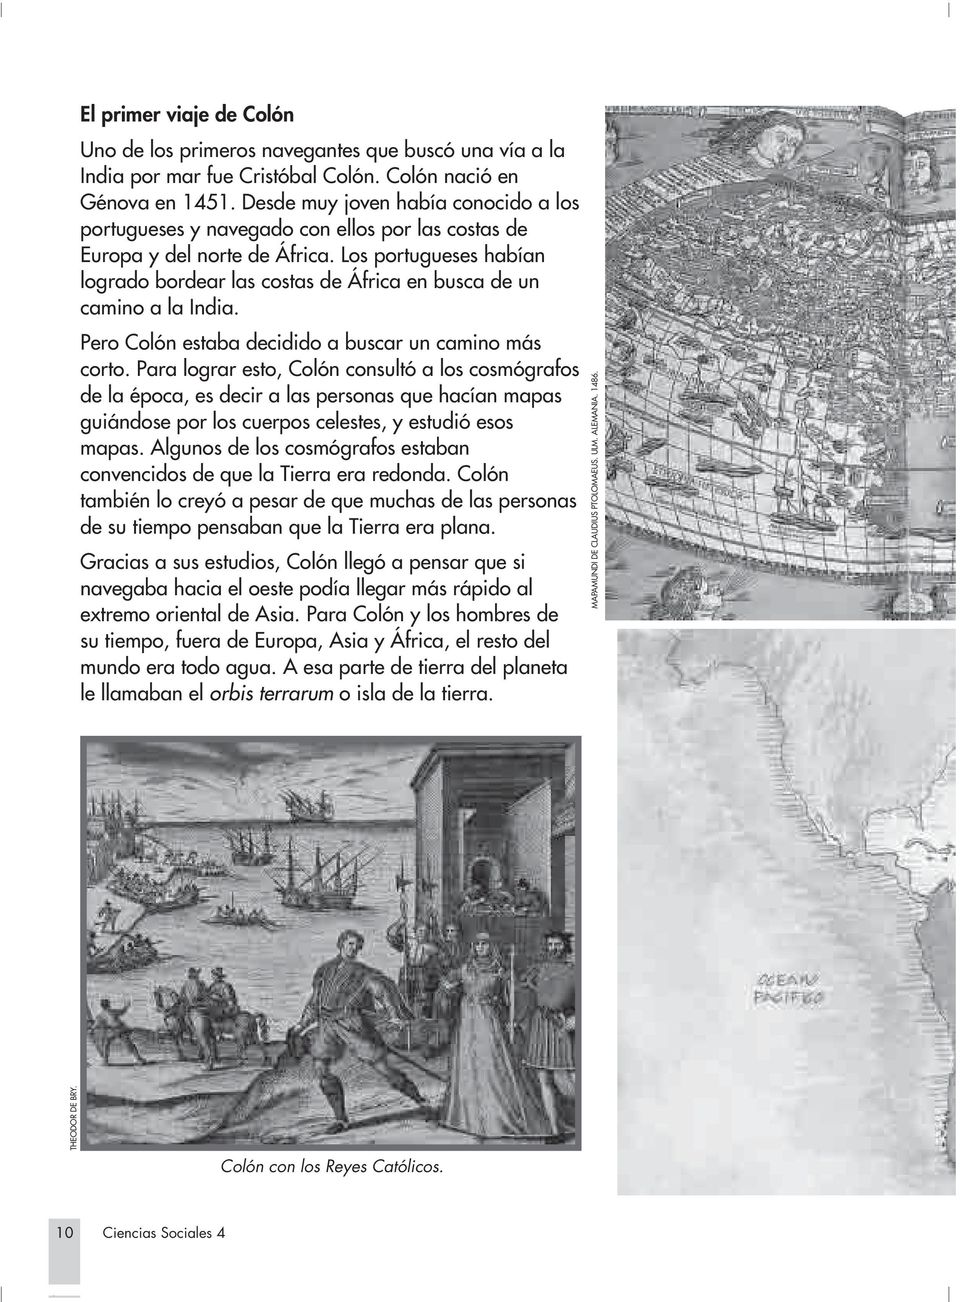 Los portugueses habían logrado bordear las costas de África en busca de un camino a la India. Pero Colón estaba decidido a buscar un camino más corto.